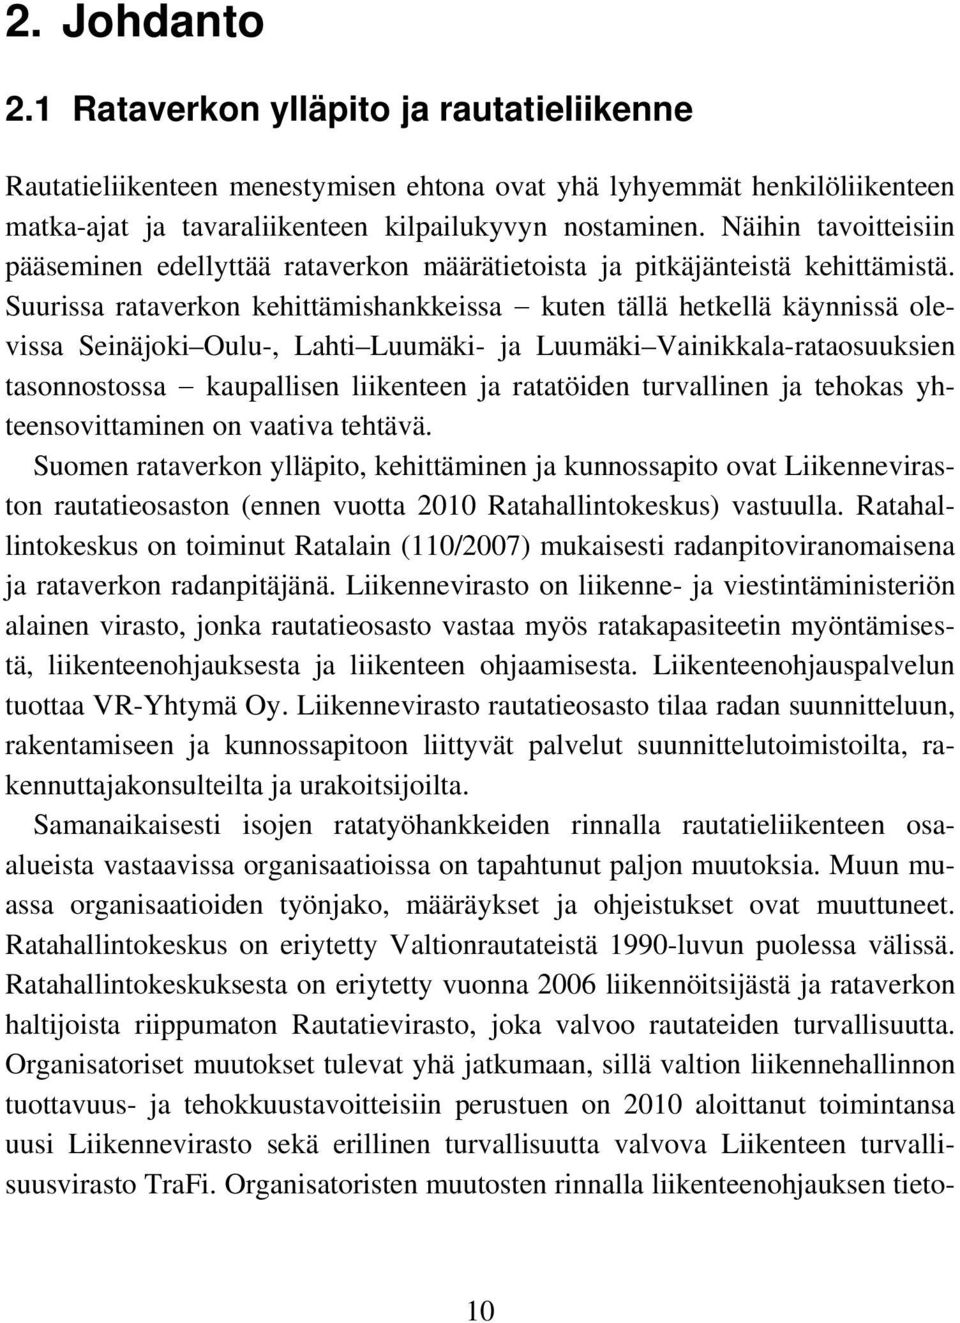 Suurissa rataverkon kehittämishankkeissa kuten tällä hetkellä käynnissä olevissa Seinäjoki Oulu-, Lahti Luumäki- ja Luumäki Vainikkala-rataosuuksien tasonnostossa kaupallisen liikenteen ja ratatöiden